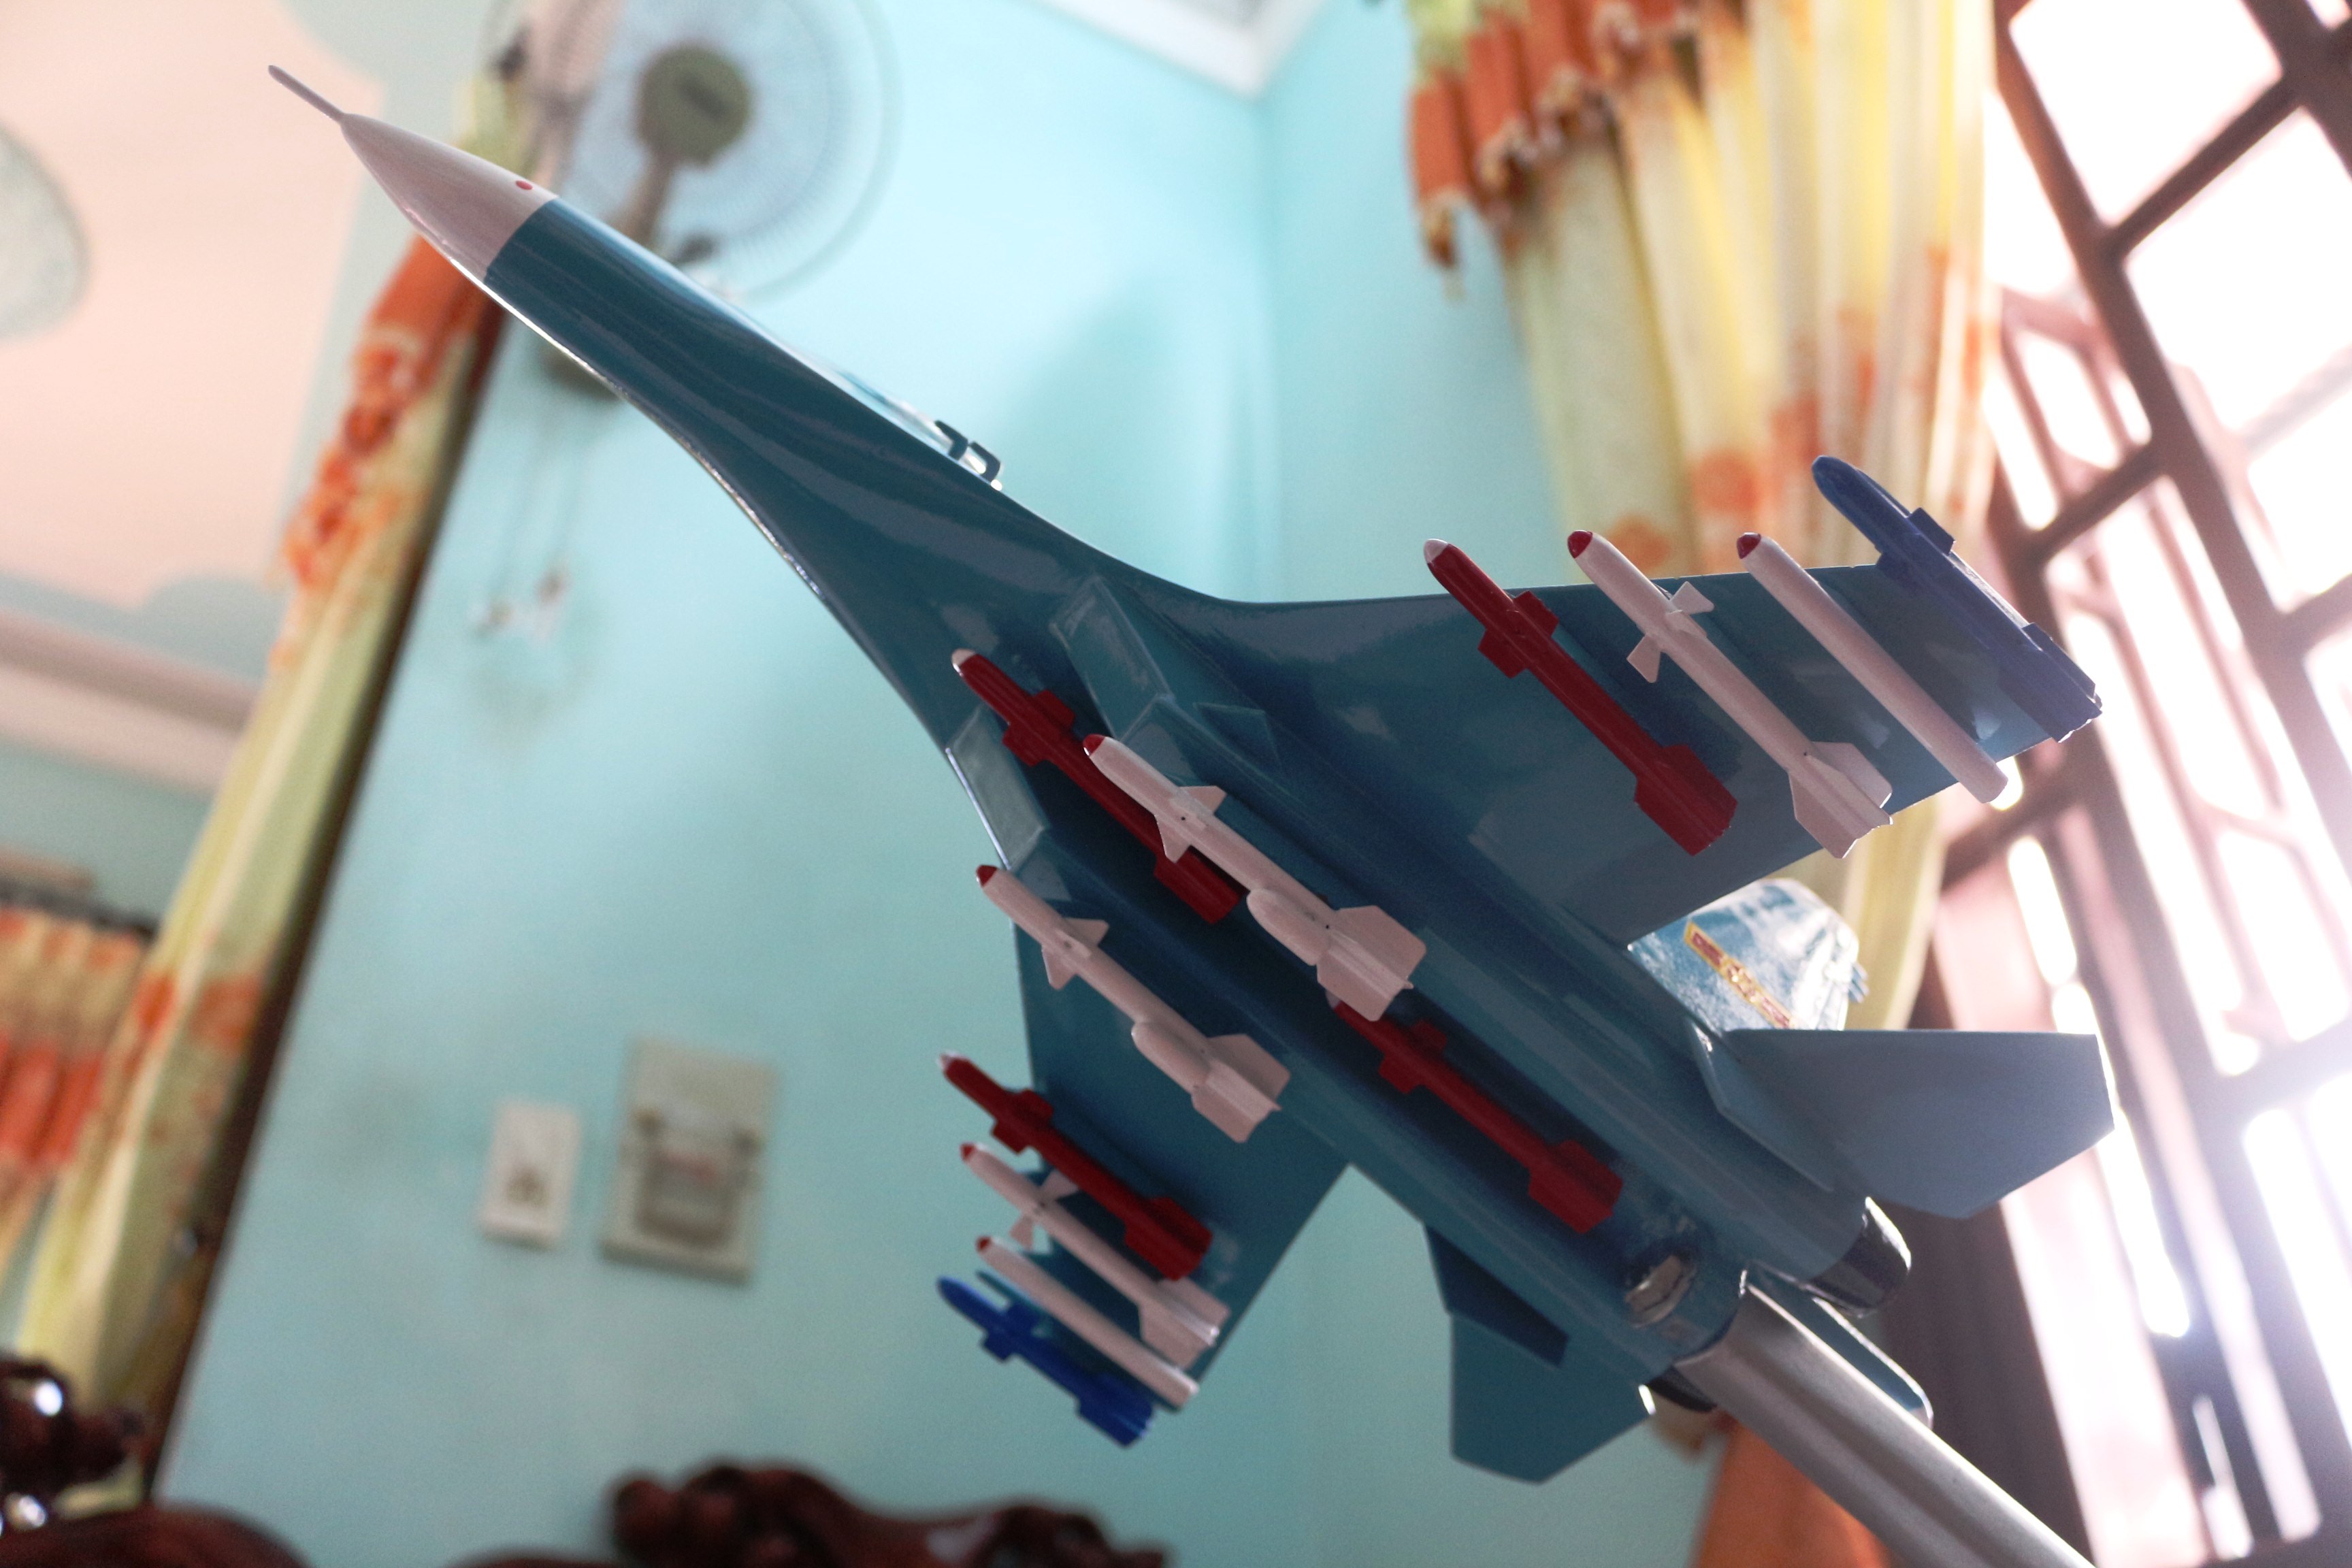 Mô hình máy bay chiến đấu - Mô hình máy bay chiến đấu là một bộ sưu tập thú vị cho những người yêu thích máy bay chiến đấu. Hình ảnh những chiếc máy bay này sẽ khiến bạn phấn khích và tò mò về chức năng của chúng trong các hoạt động quân sự. Tìm hiểu thêm về bộ sưu tập này bằng cách xem hình ảnh.